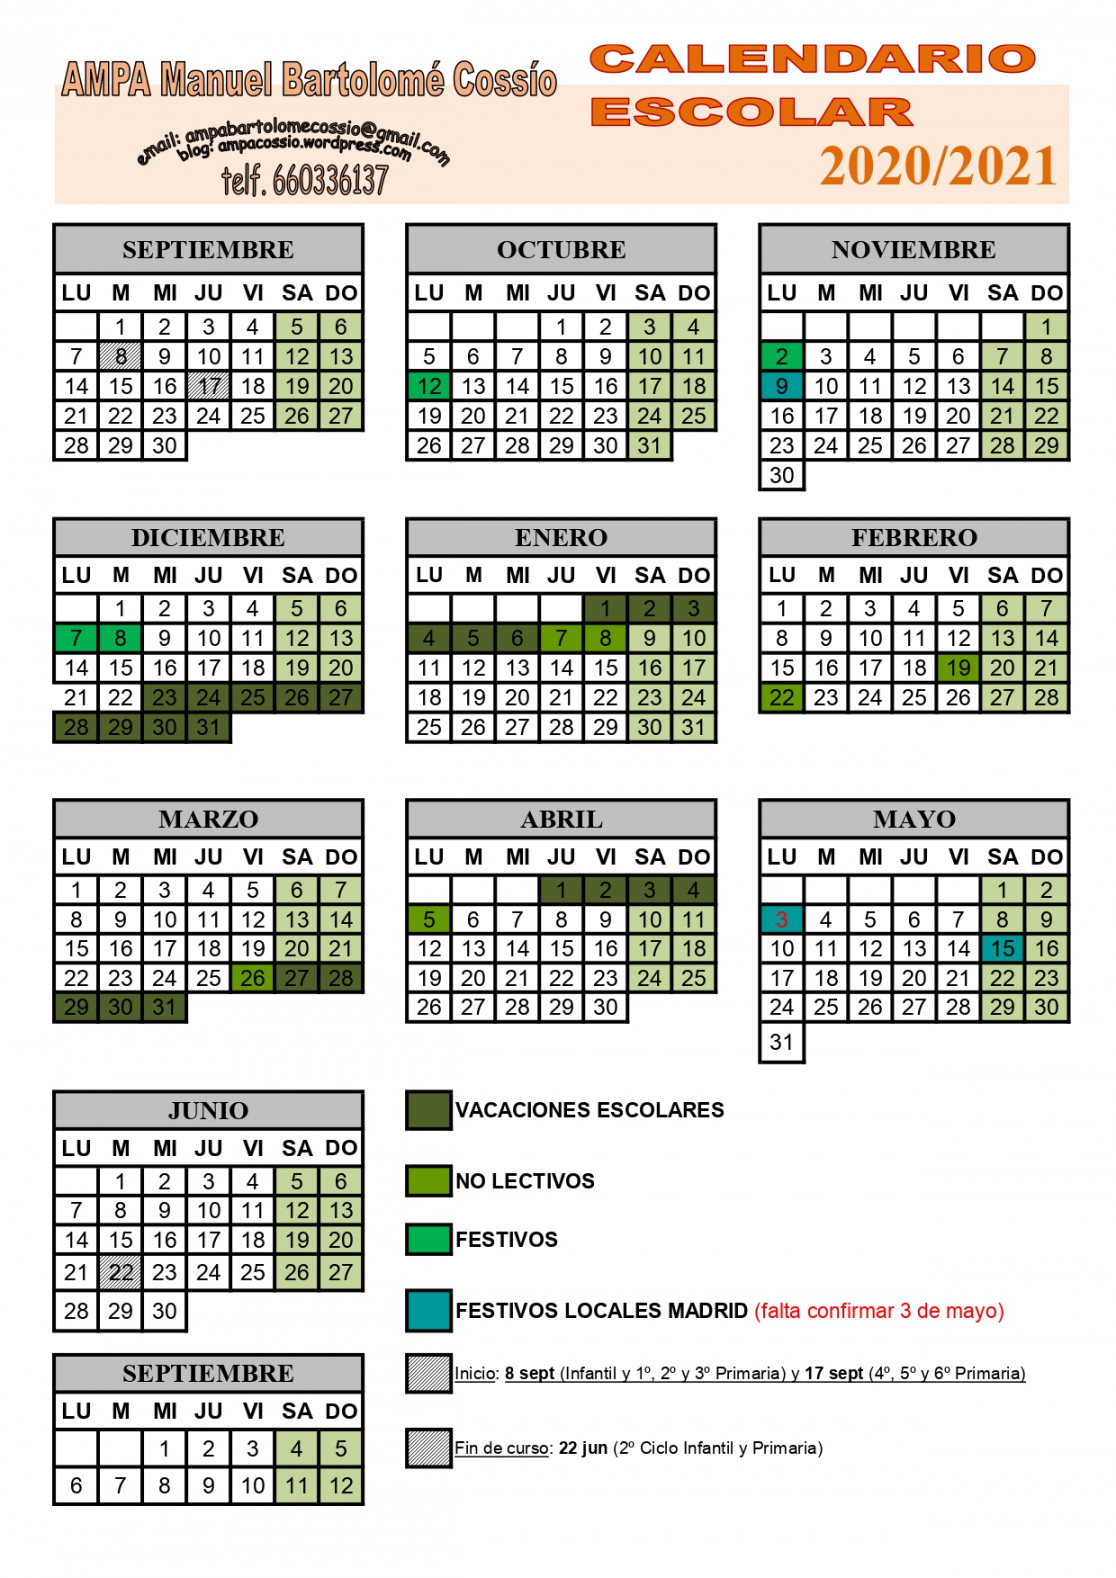 Calendario Escolar -  ampacossio